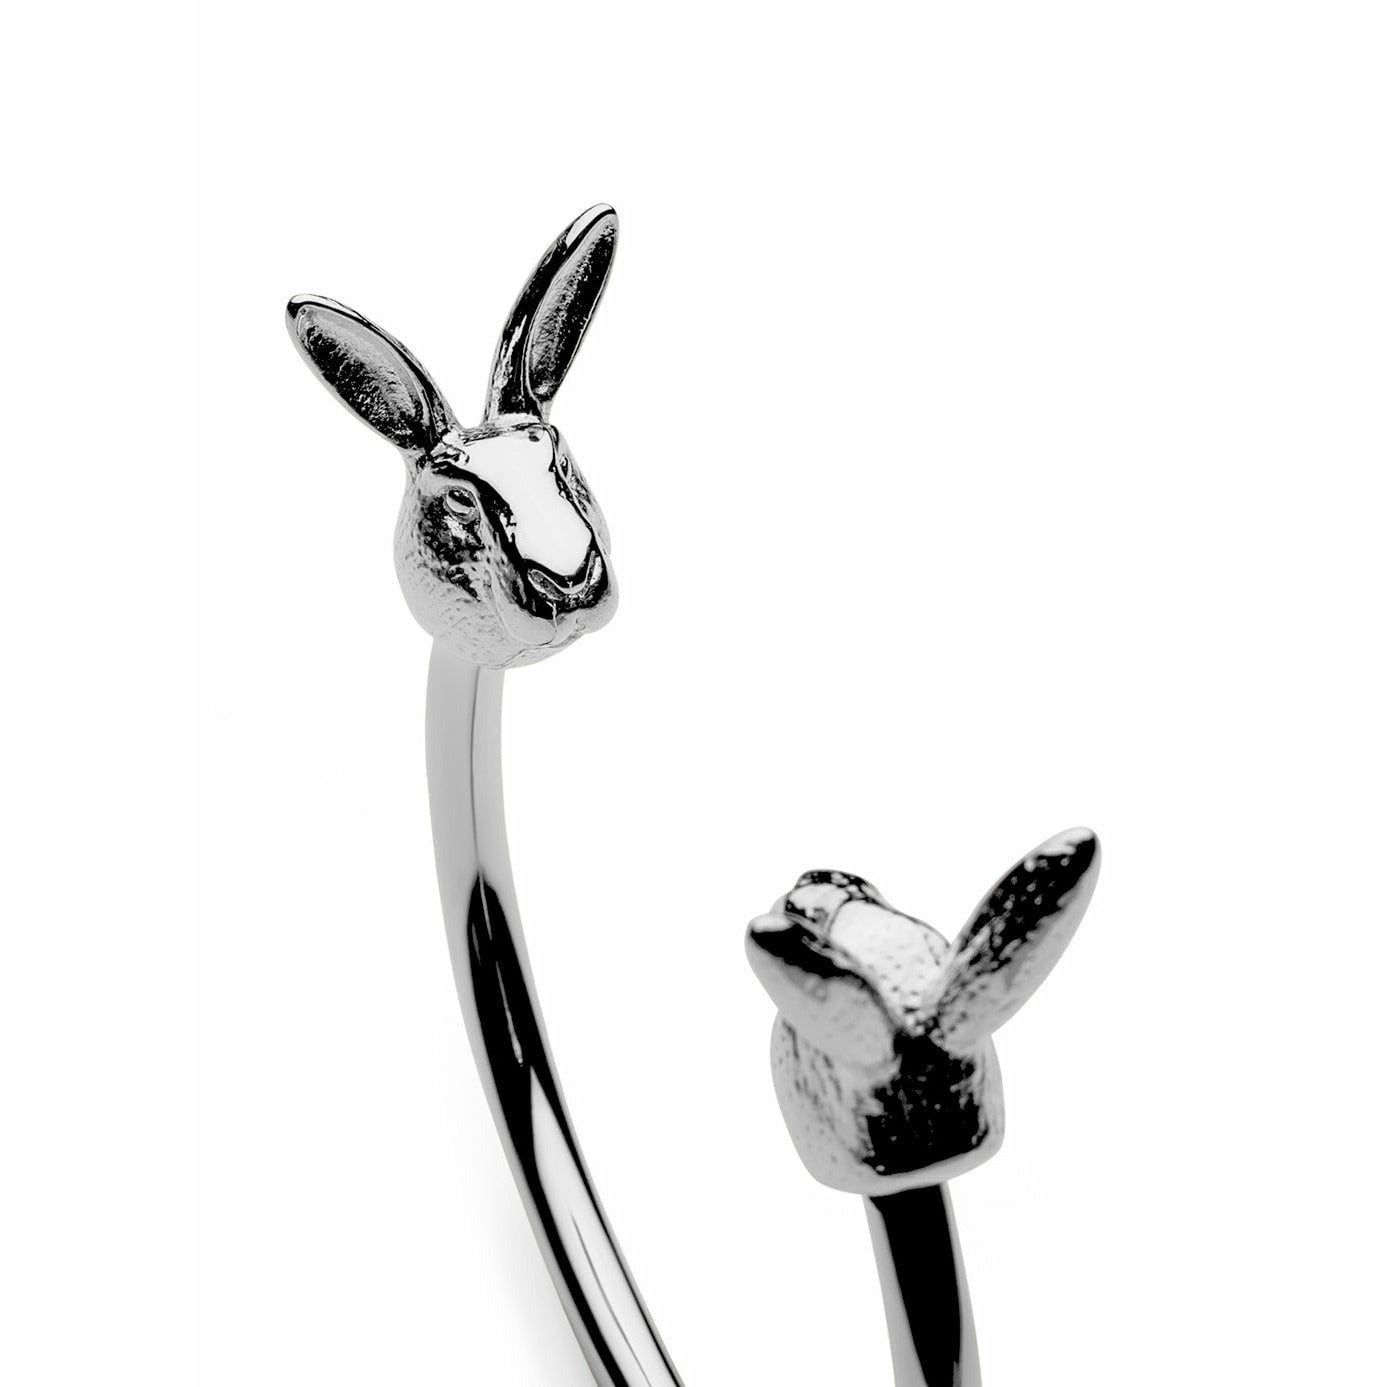 Skultuna Den nordiske dyreliv kanin armbånd stort poleret stål, Ø18,5 cm